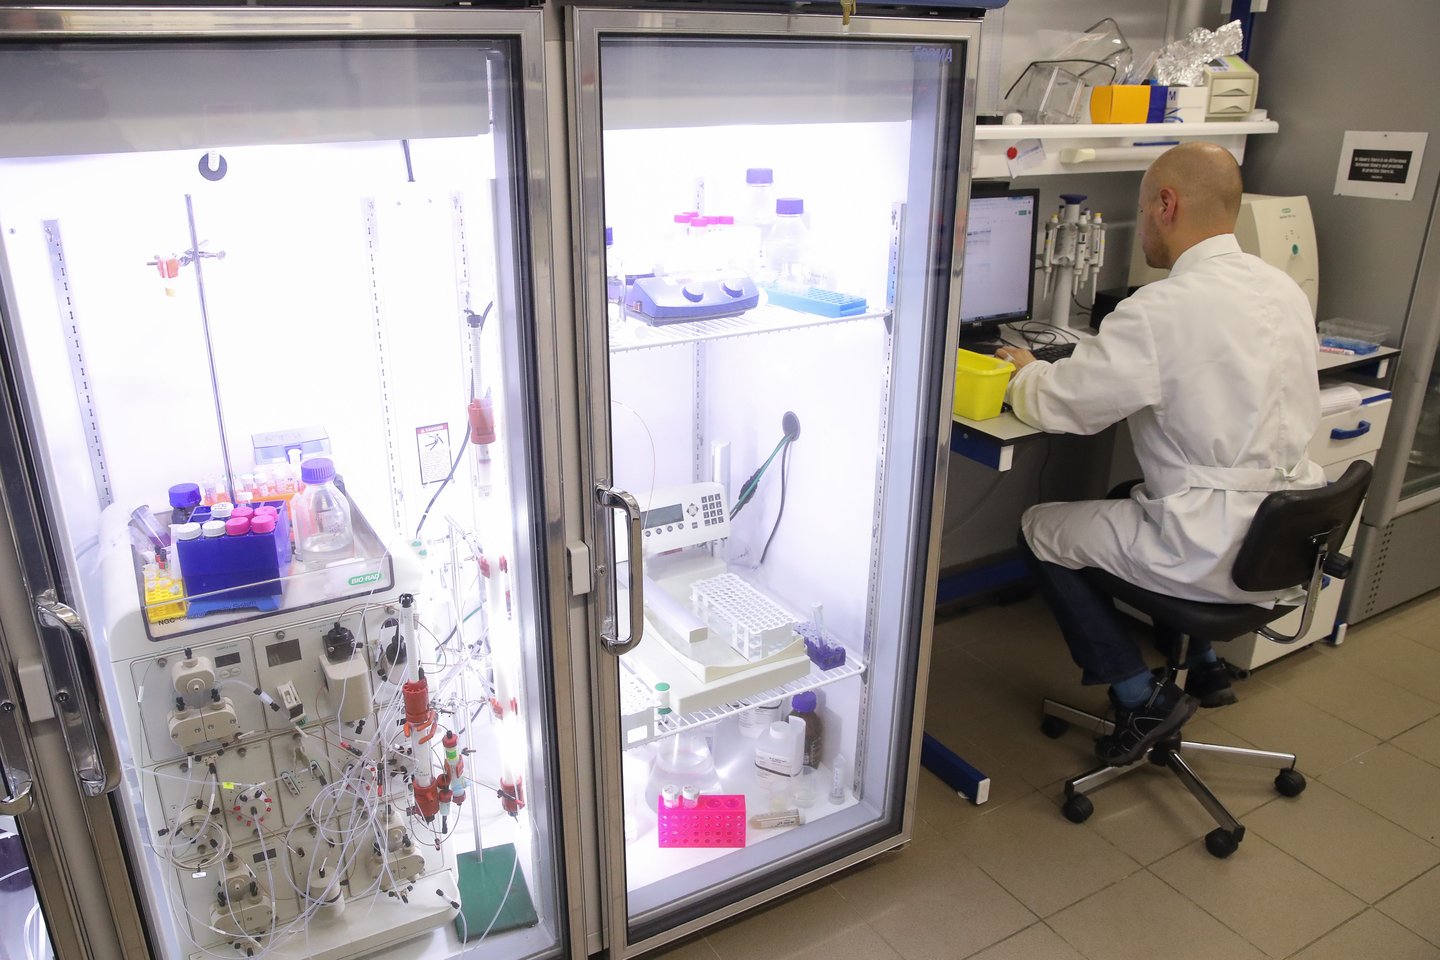  ​Lenkijos farmacijos koncernas „Biomed Lublin“ pranešė, jog už pusmečio į prekybą vaistinėse pateiks pirmą pasaulyje vaistą nuo koronaviruso. Tai bus į raumenį leidžiami vaistai, gaminami iš nuo koronaviruso pasveikusių žmonių kraujo plazmos.<br>TASS/Scanpix nuotr.